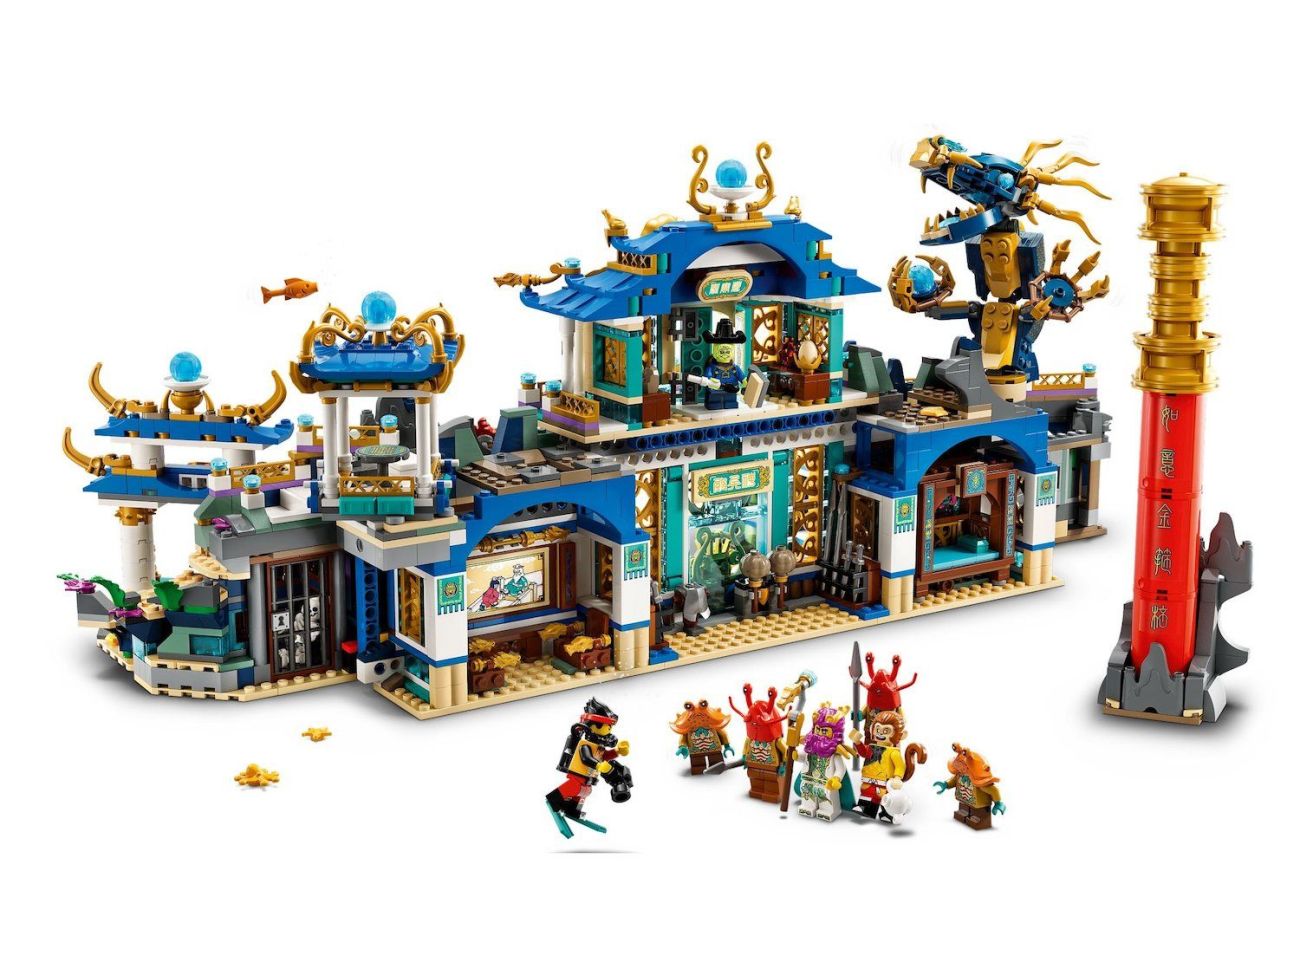 LEGO Monkie Kid 2023 Sommer Neuheiten: Ostpalast, Schutzdrache & mehr